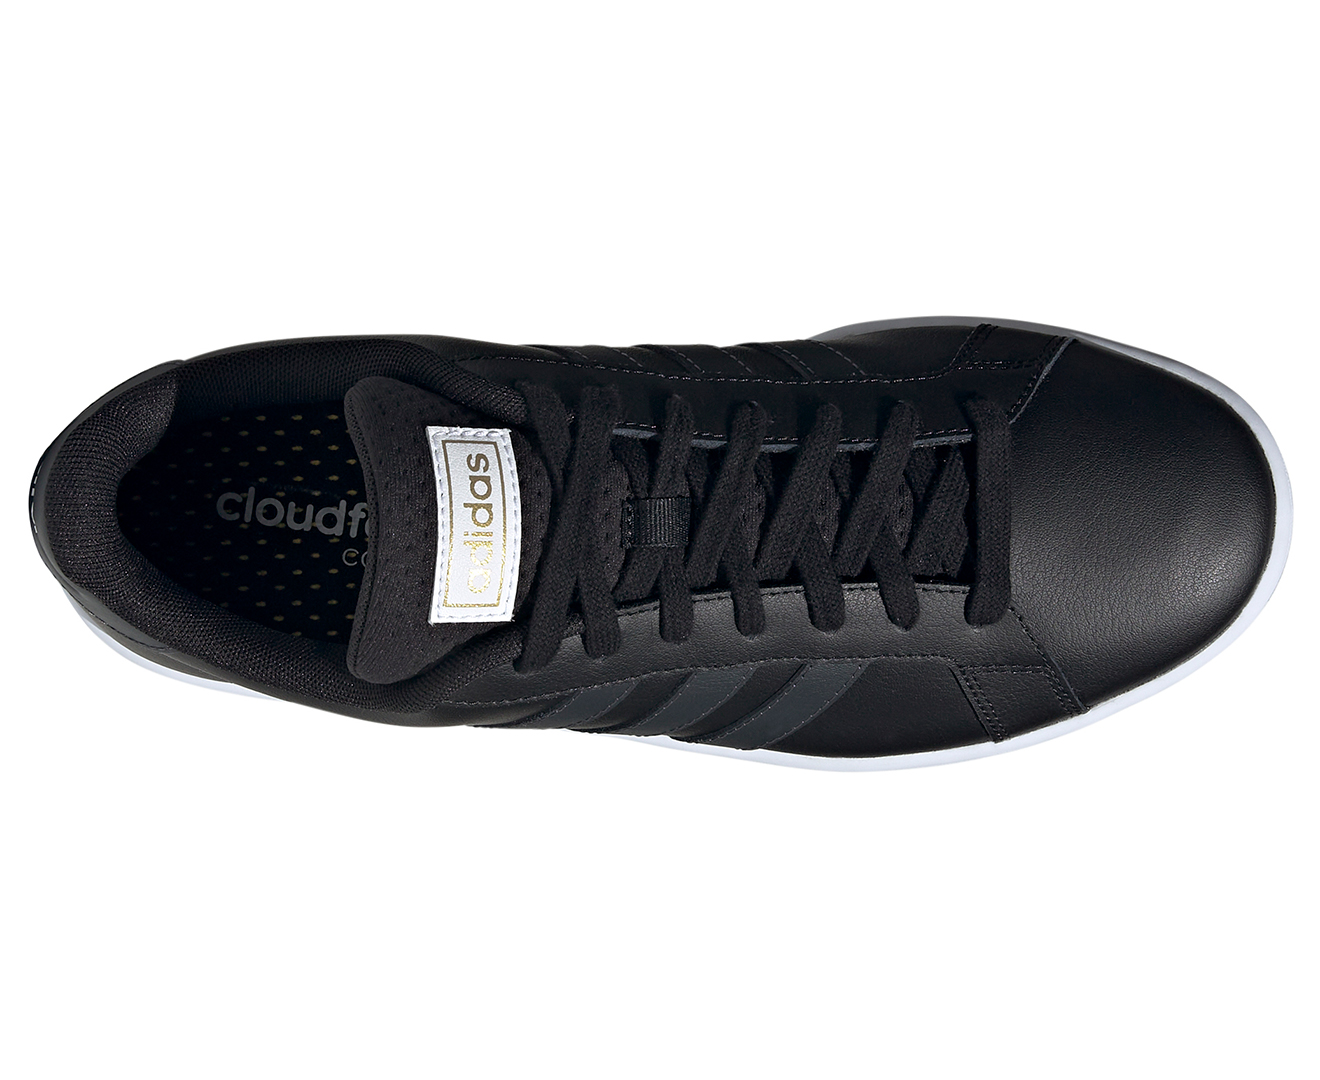 Adidas Men #39 s Grand Court Shoes Core Black/Matte Carbon/White Catch